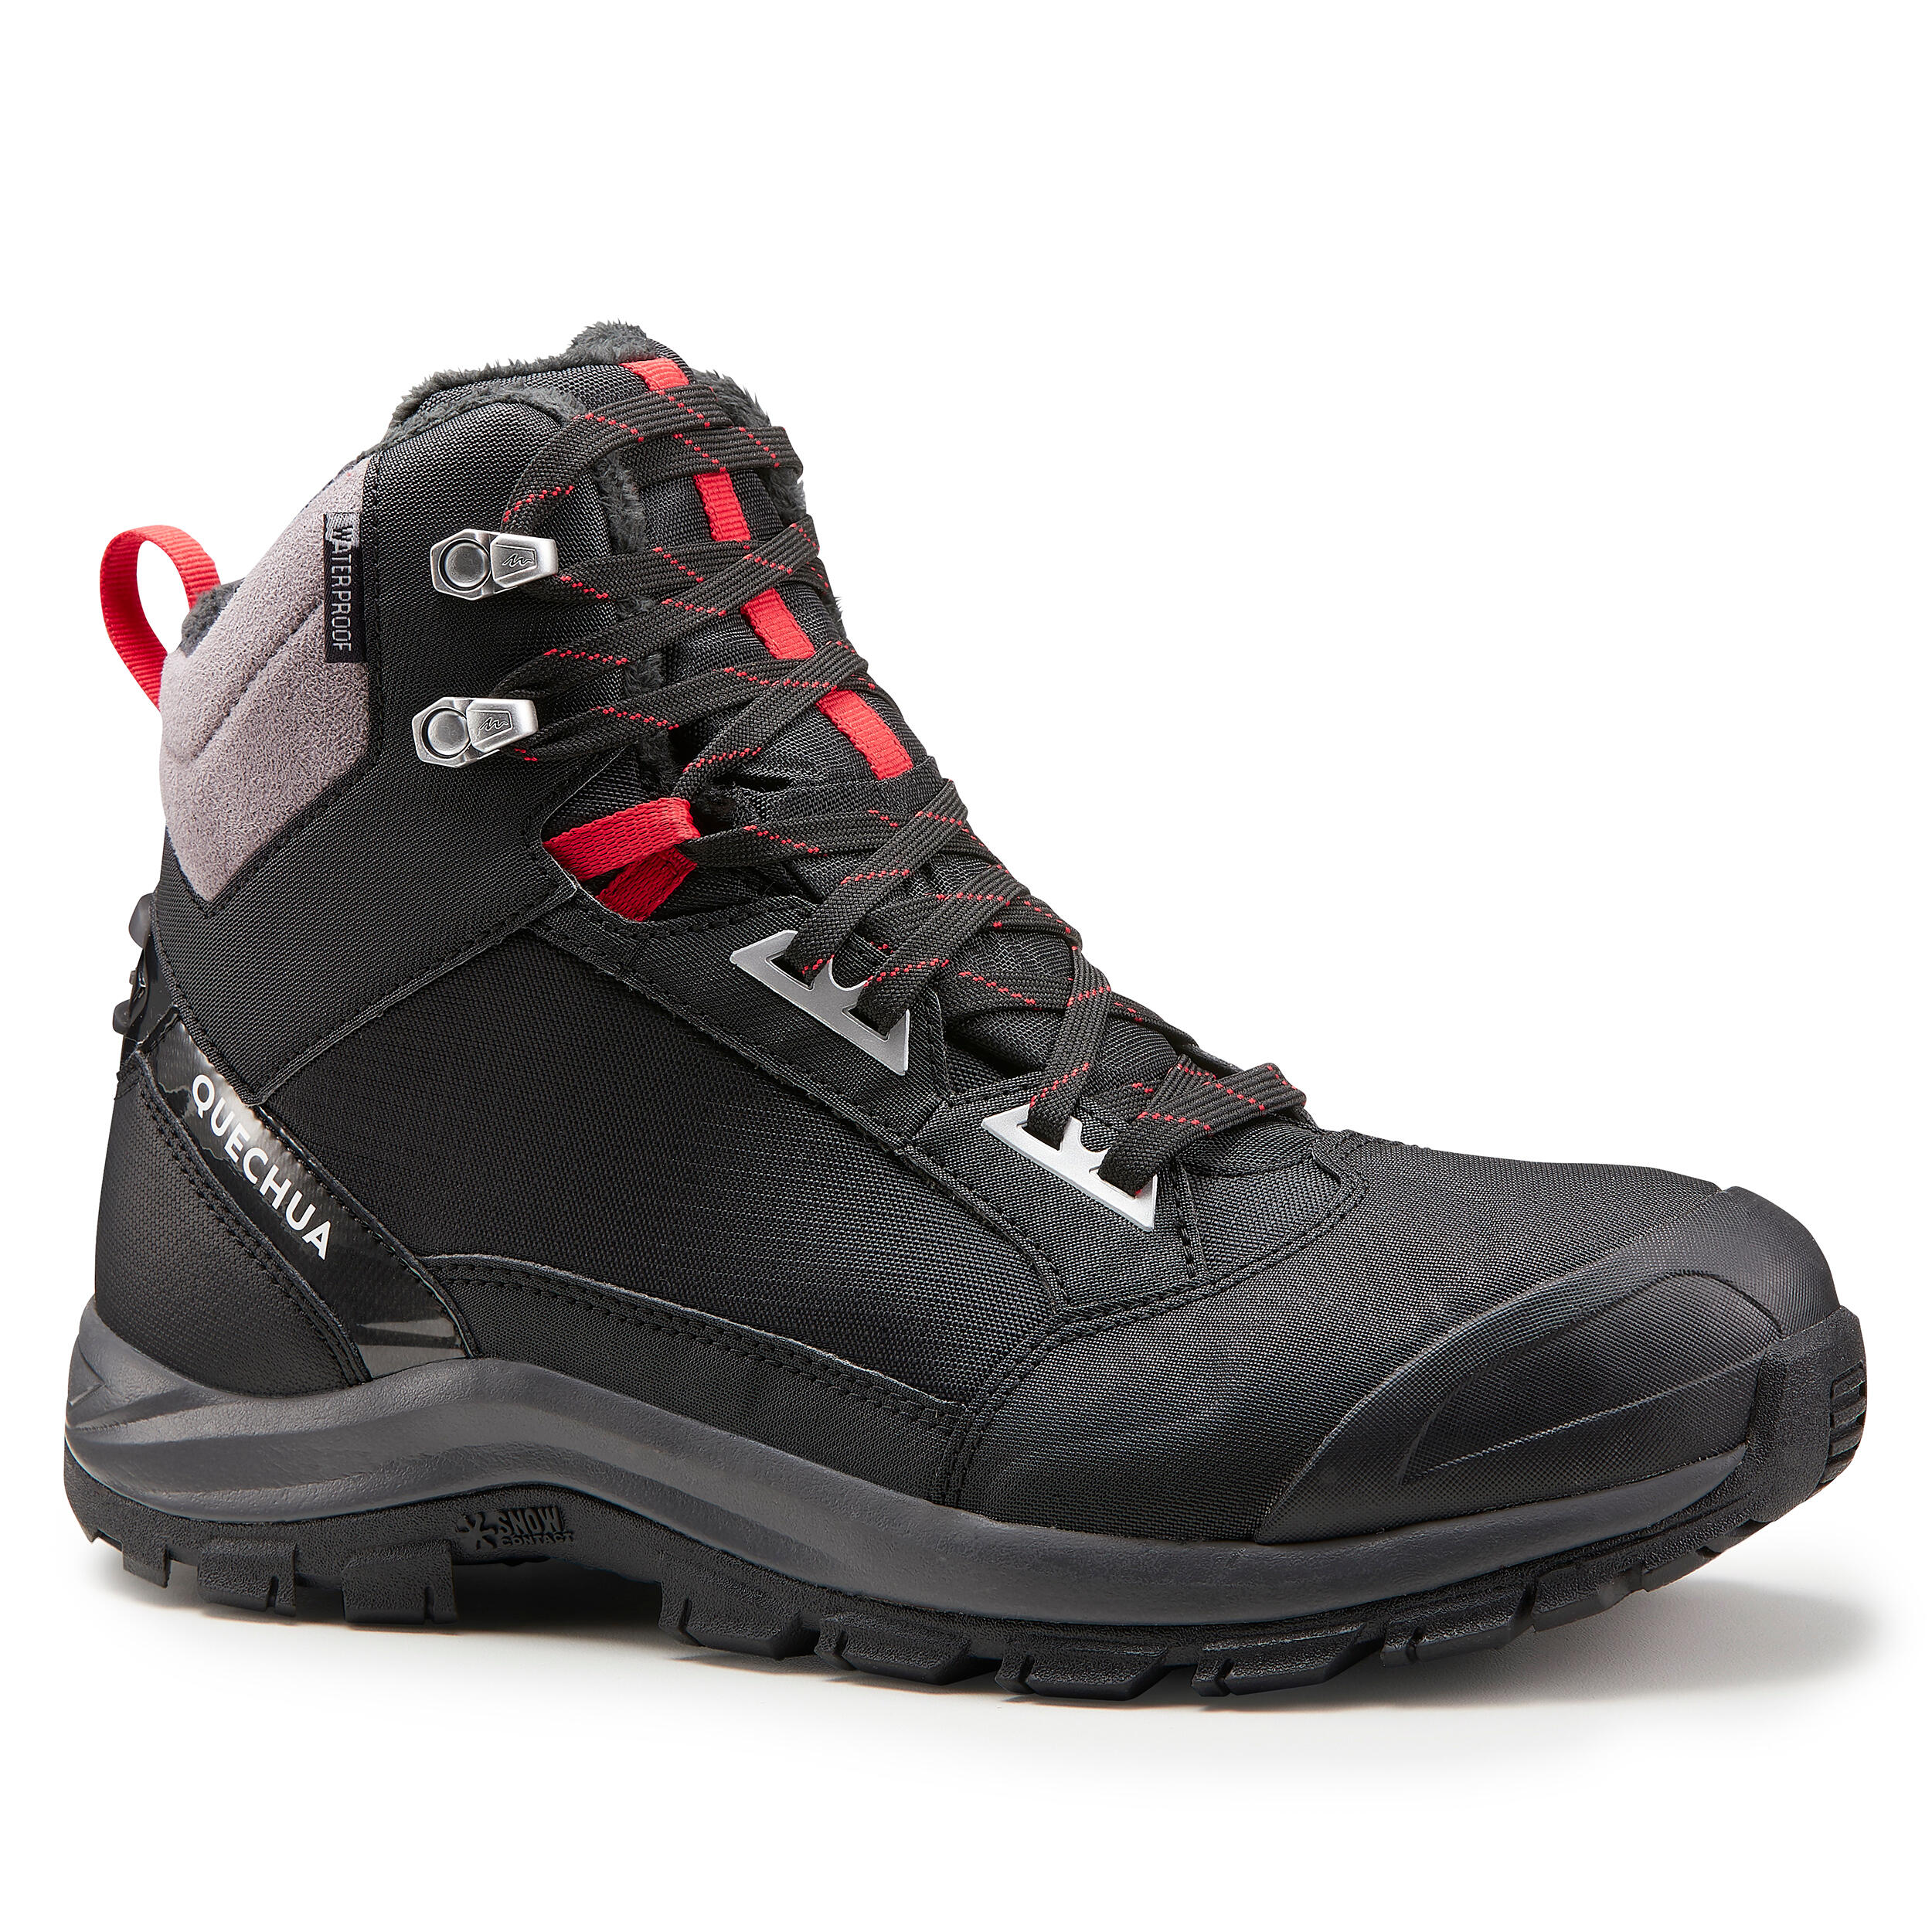 QUECHUA Chaussures chaudes imperméables de randonnée neige - SH520 X-WARM - MID Homme - QUECHUA - 45